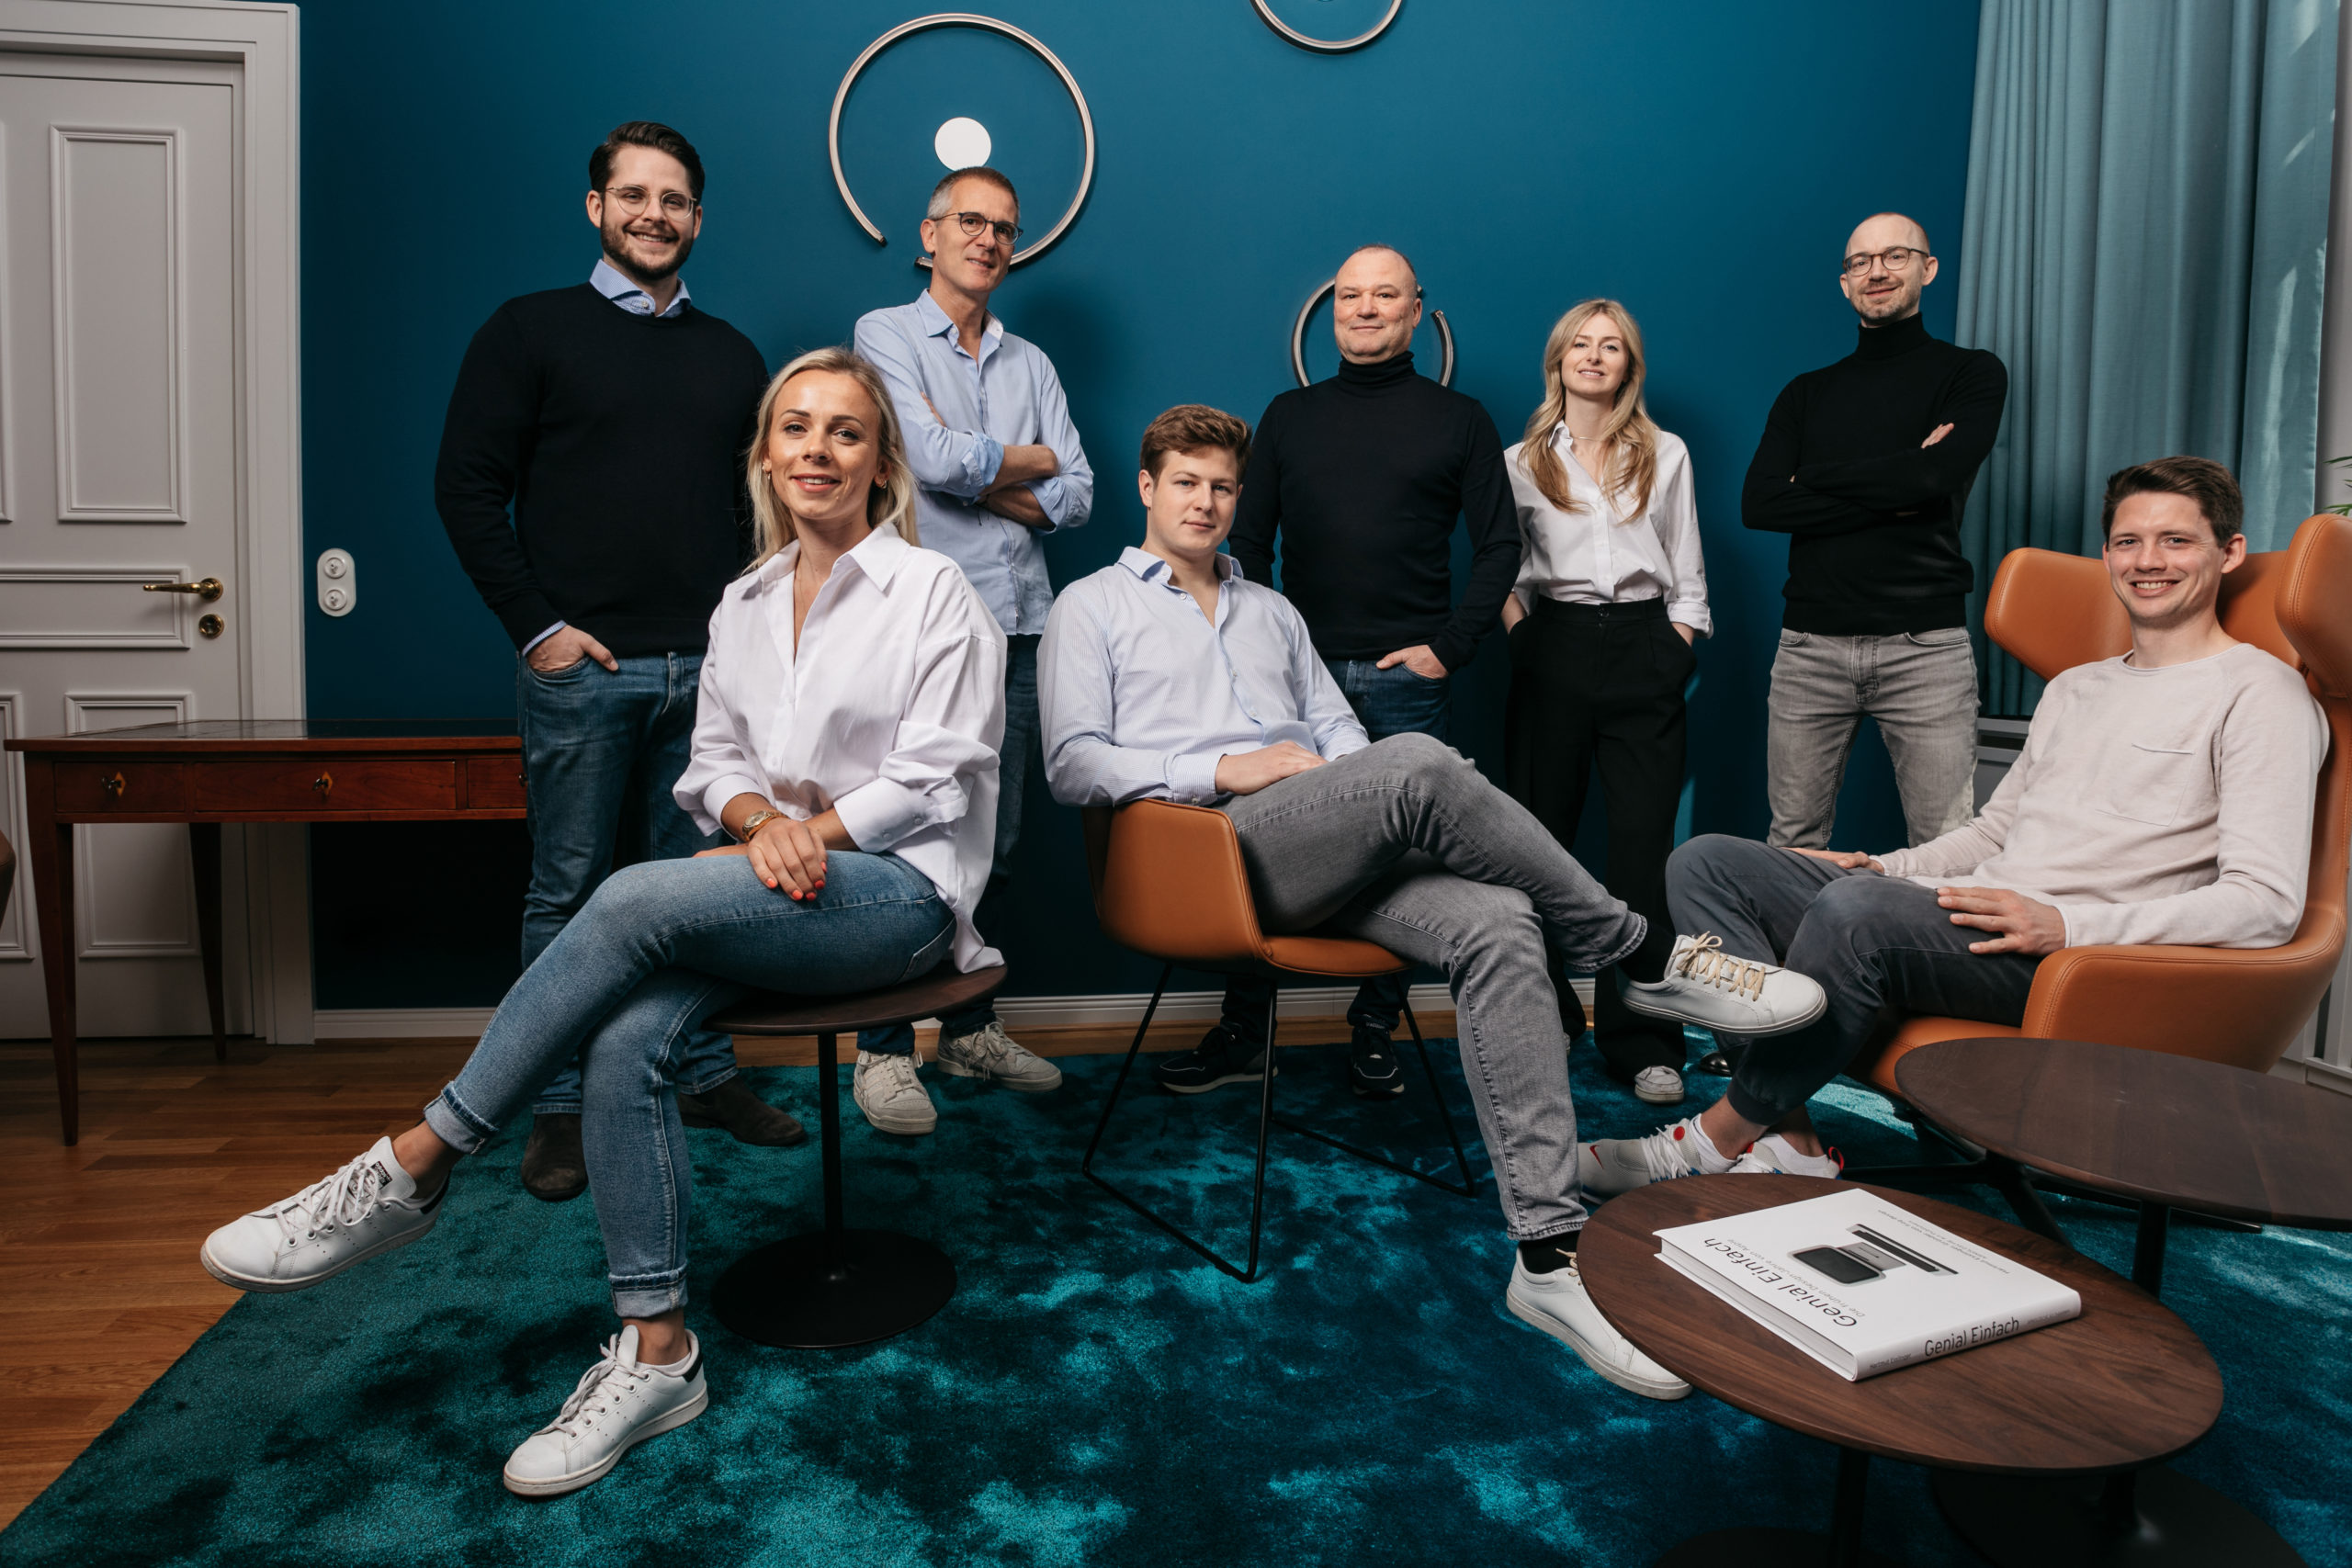 Thermomix-Firma pumpt 150 Millionen Euro in Startups – mit diesem Fokus